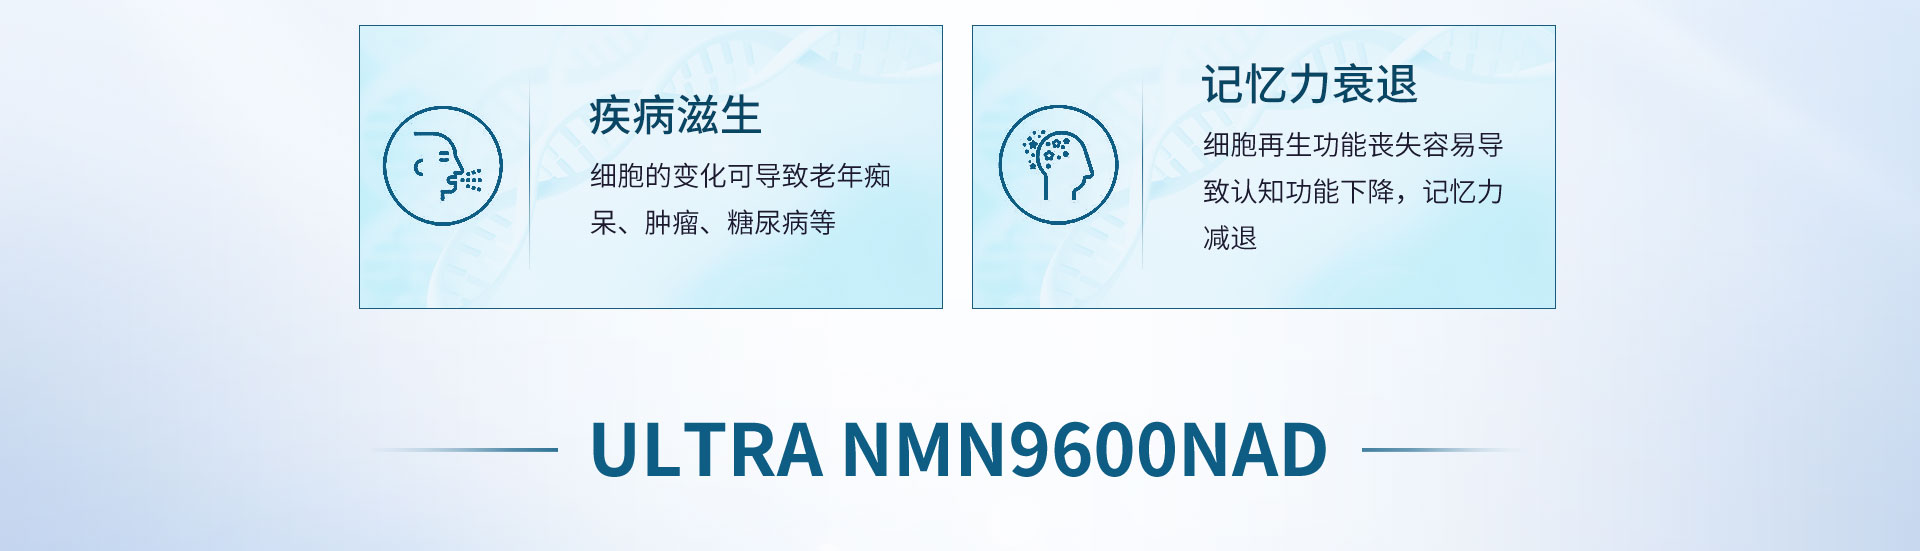 ULTRA_NMN-PC_04.jpg